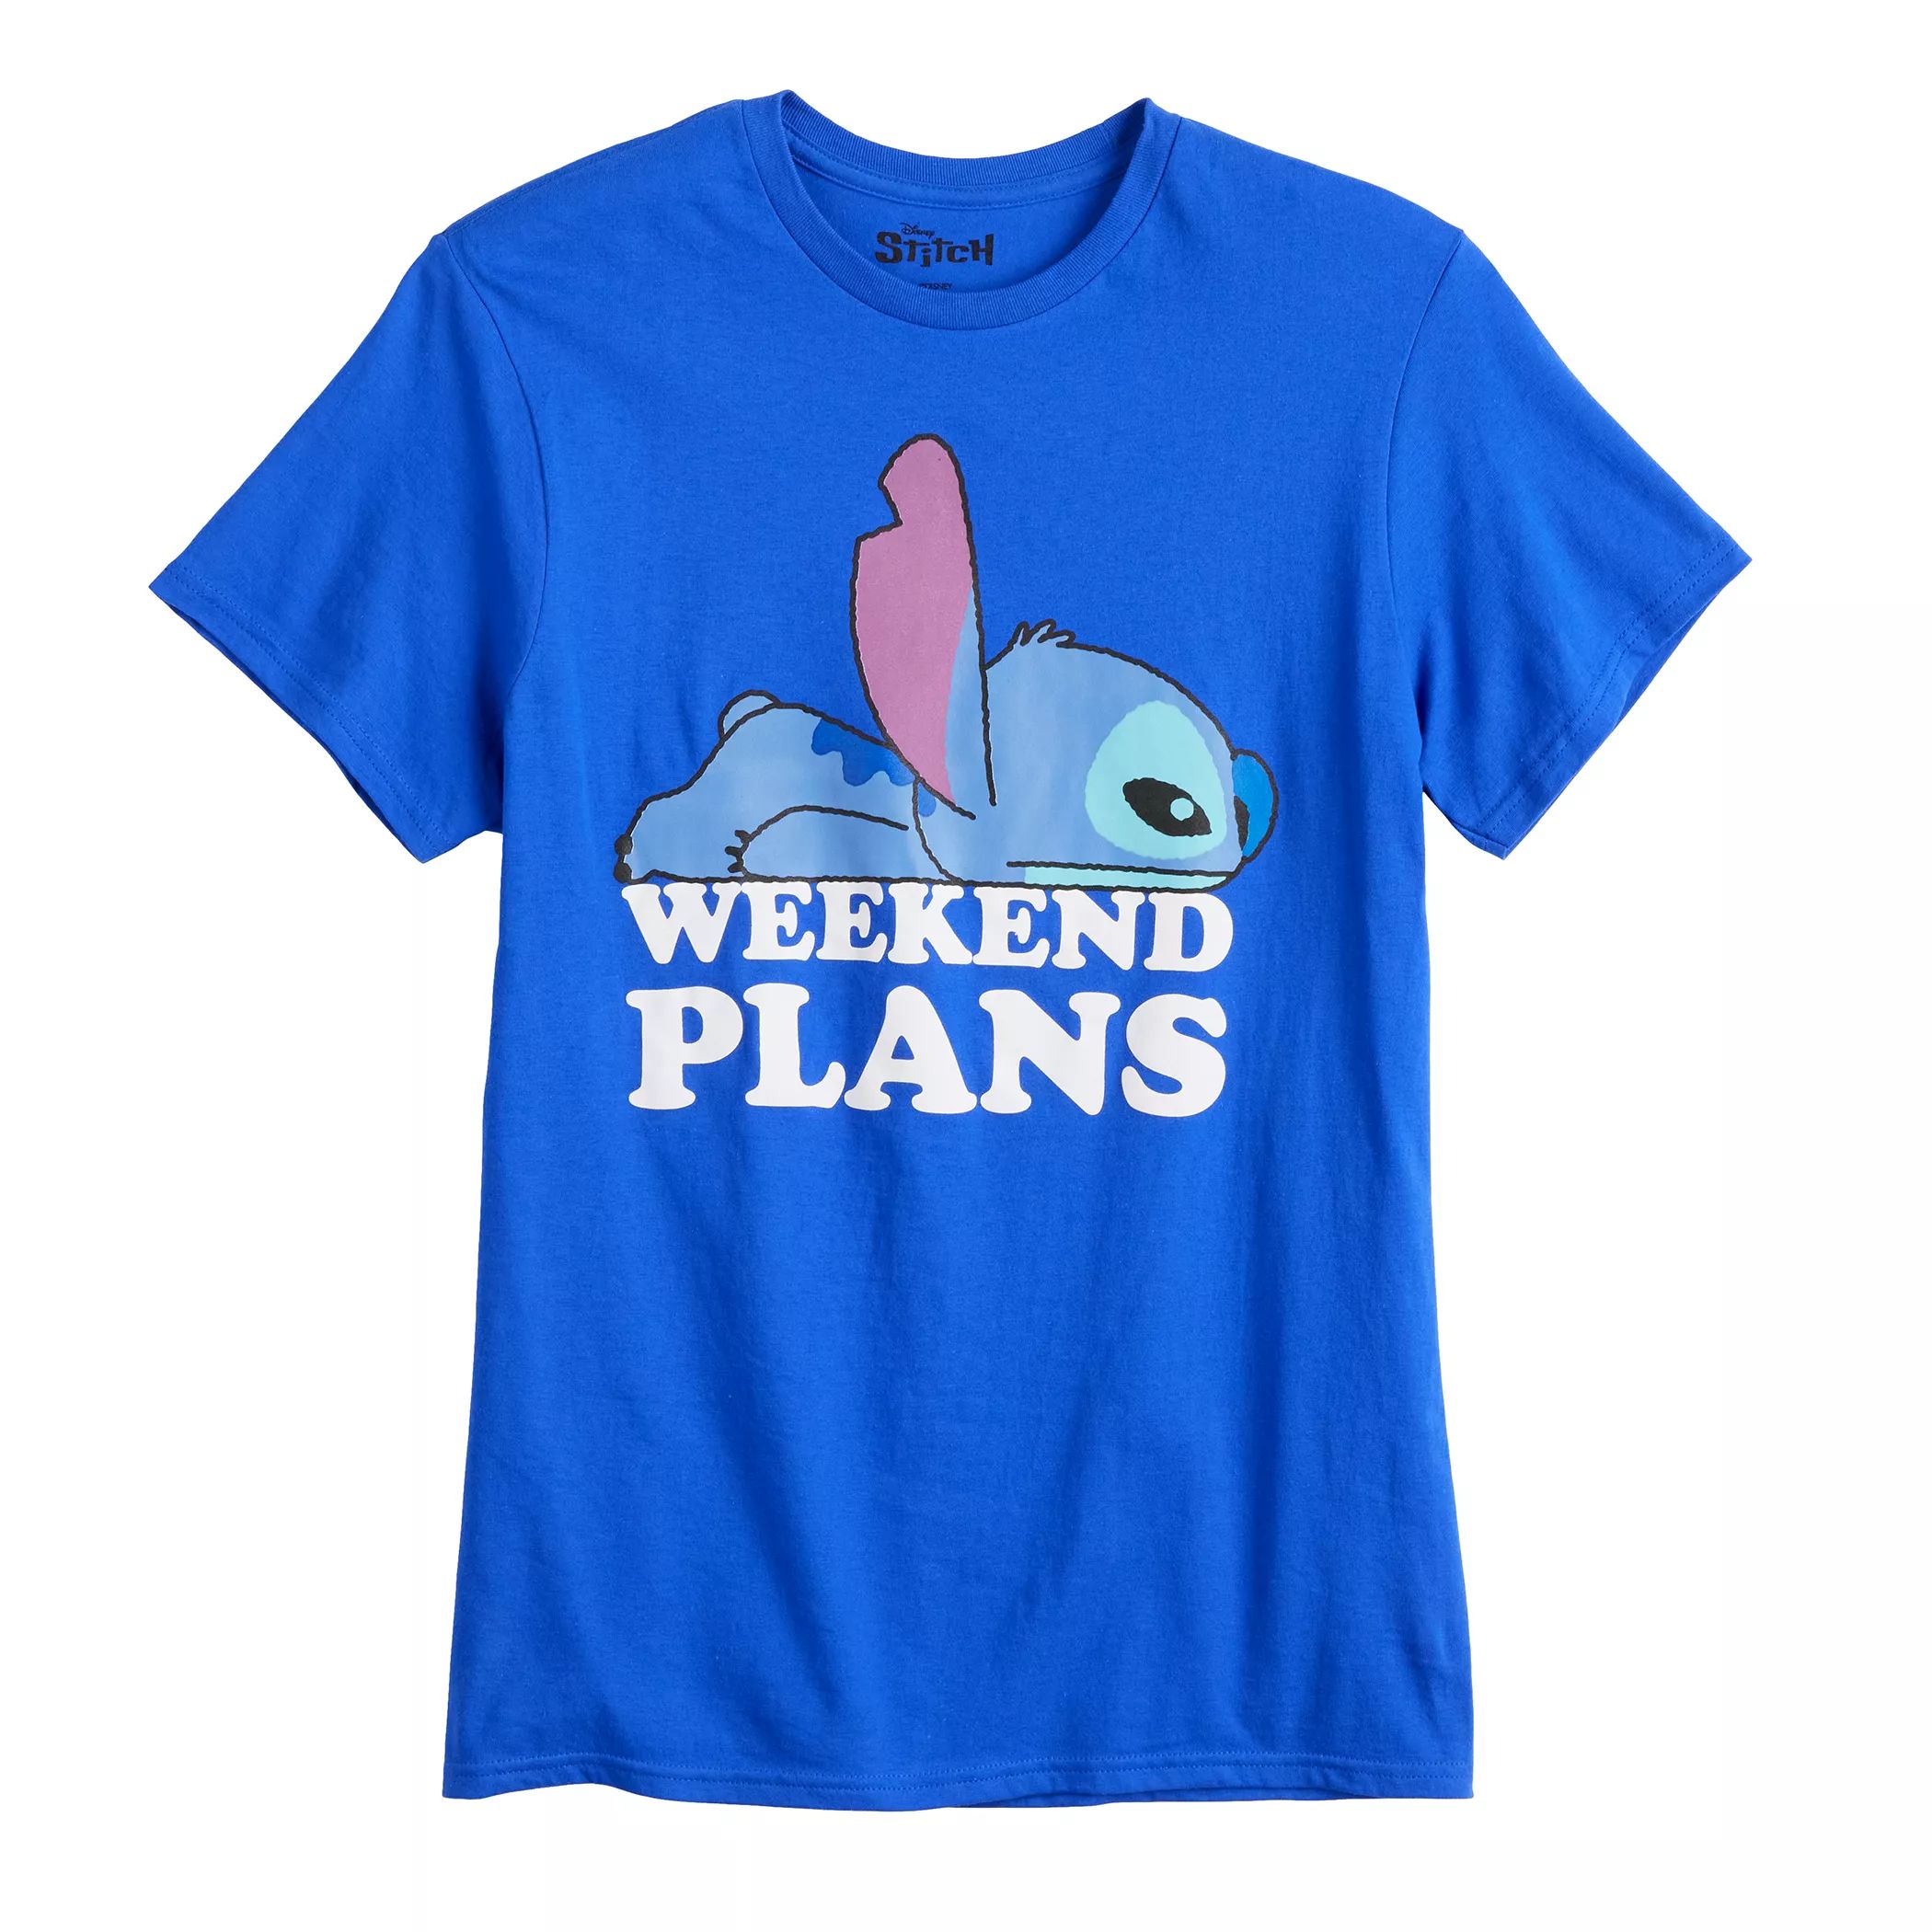 Мужская футболка с рисунком Disney's Lilo & Stitch «Планы на выходные»